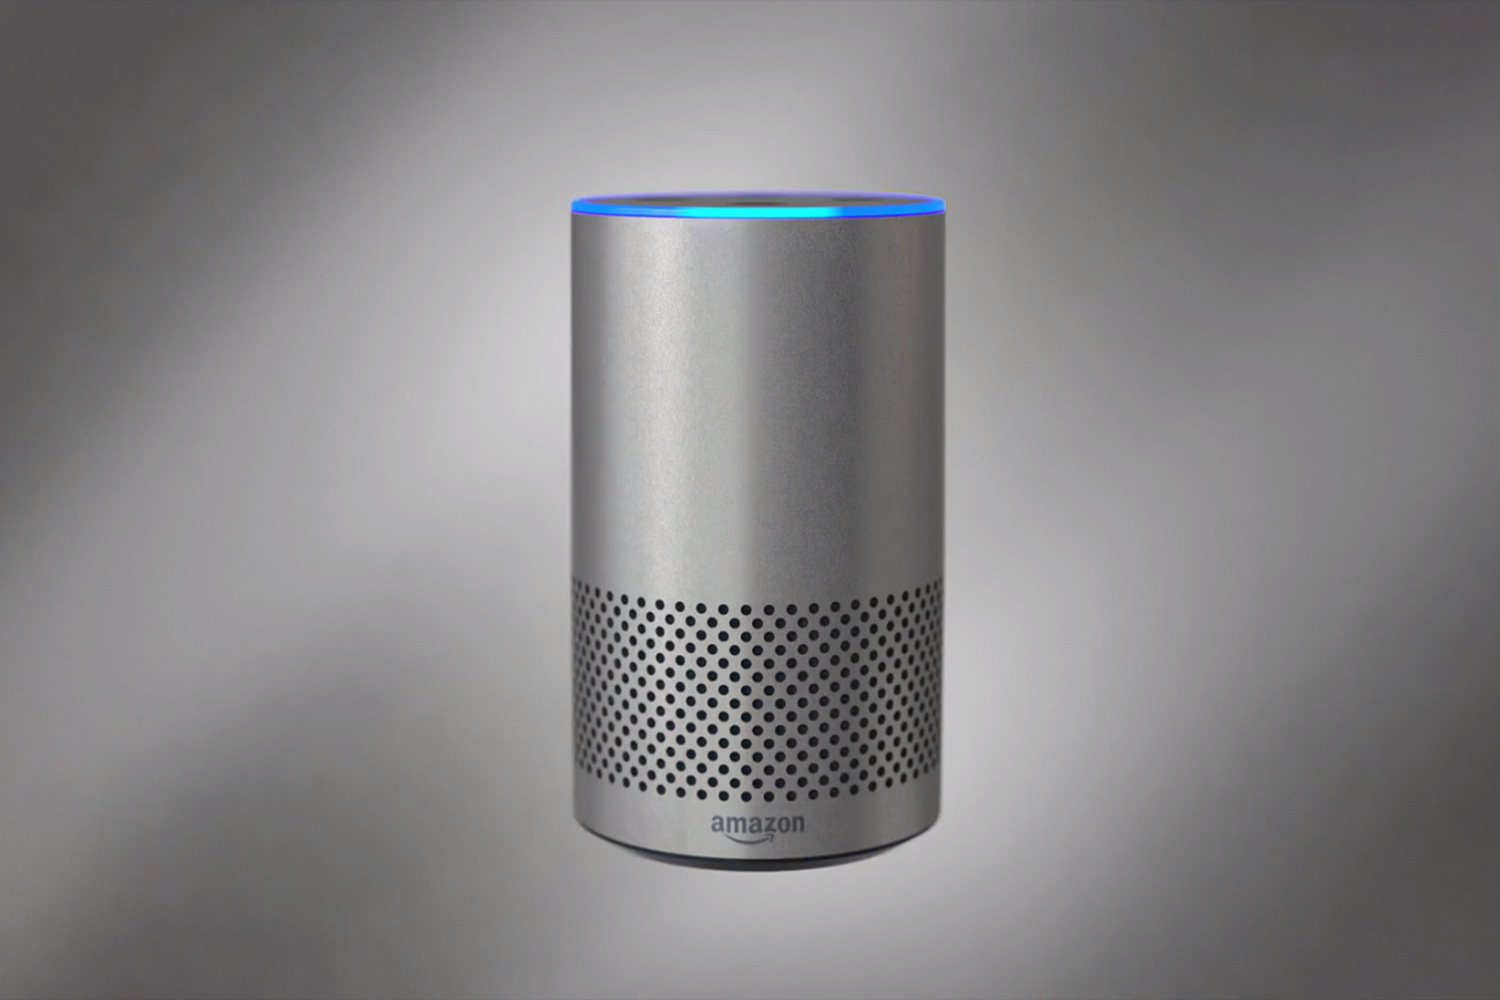 Amazon Echo vs Apple Homepod